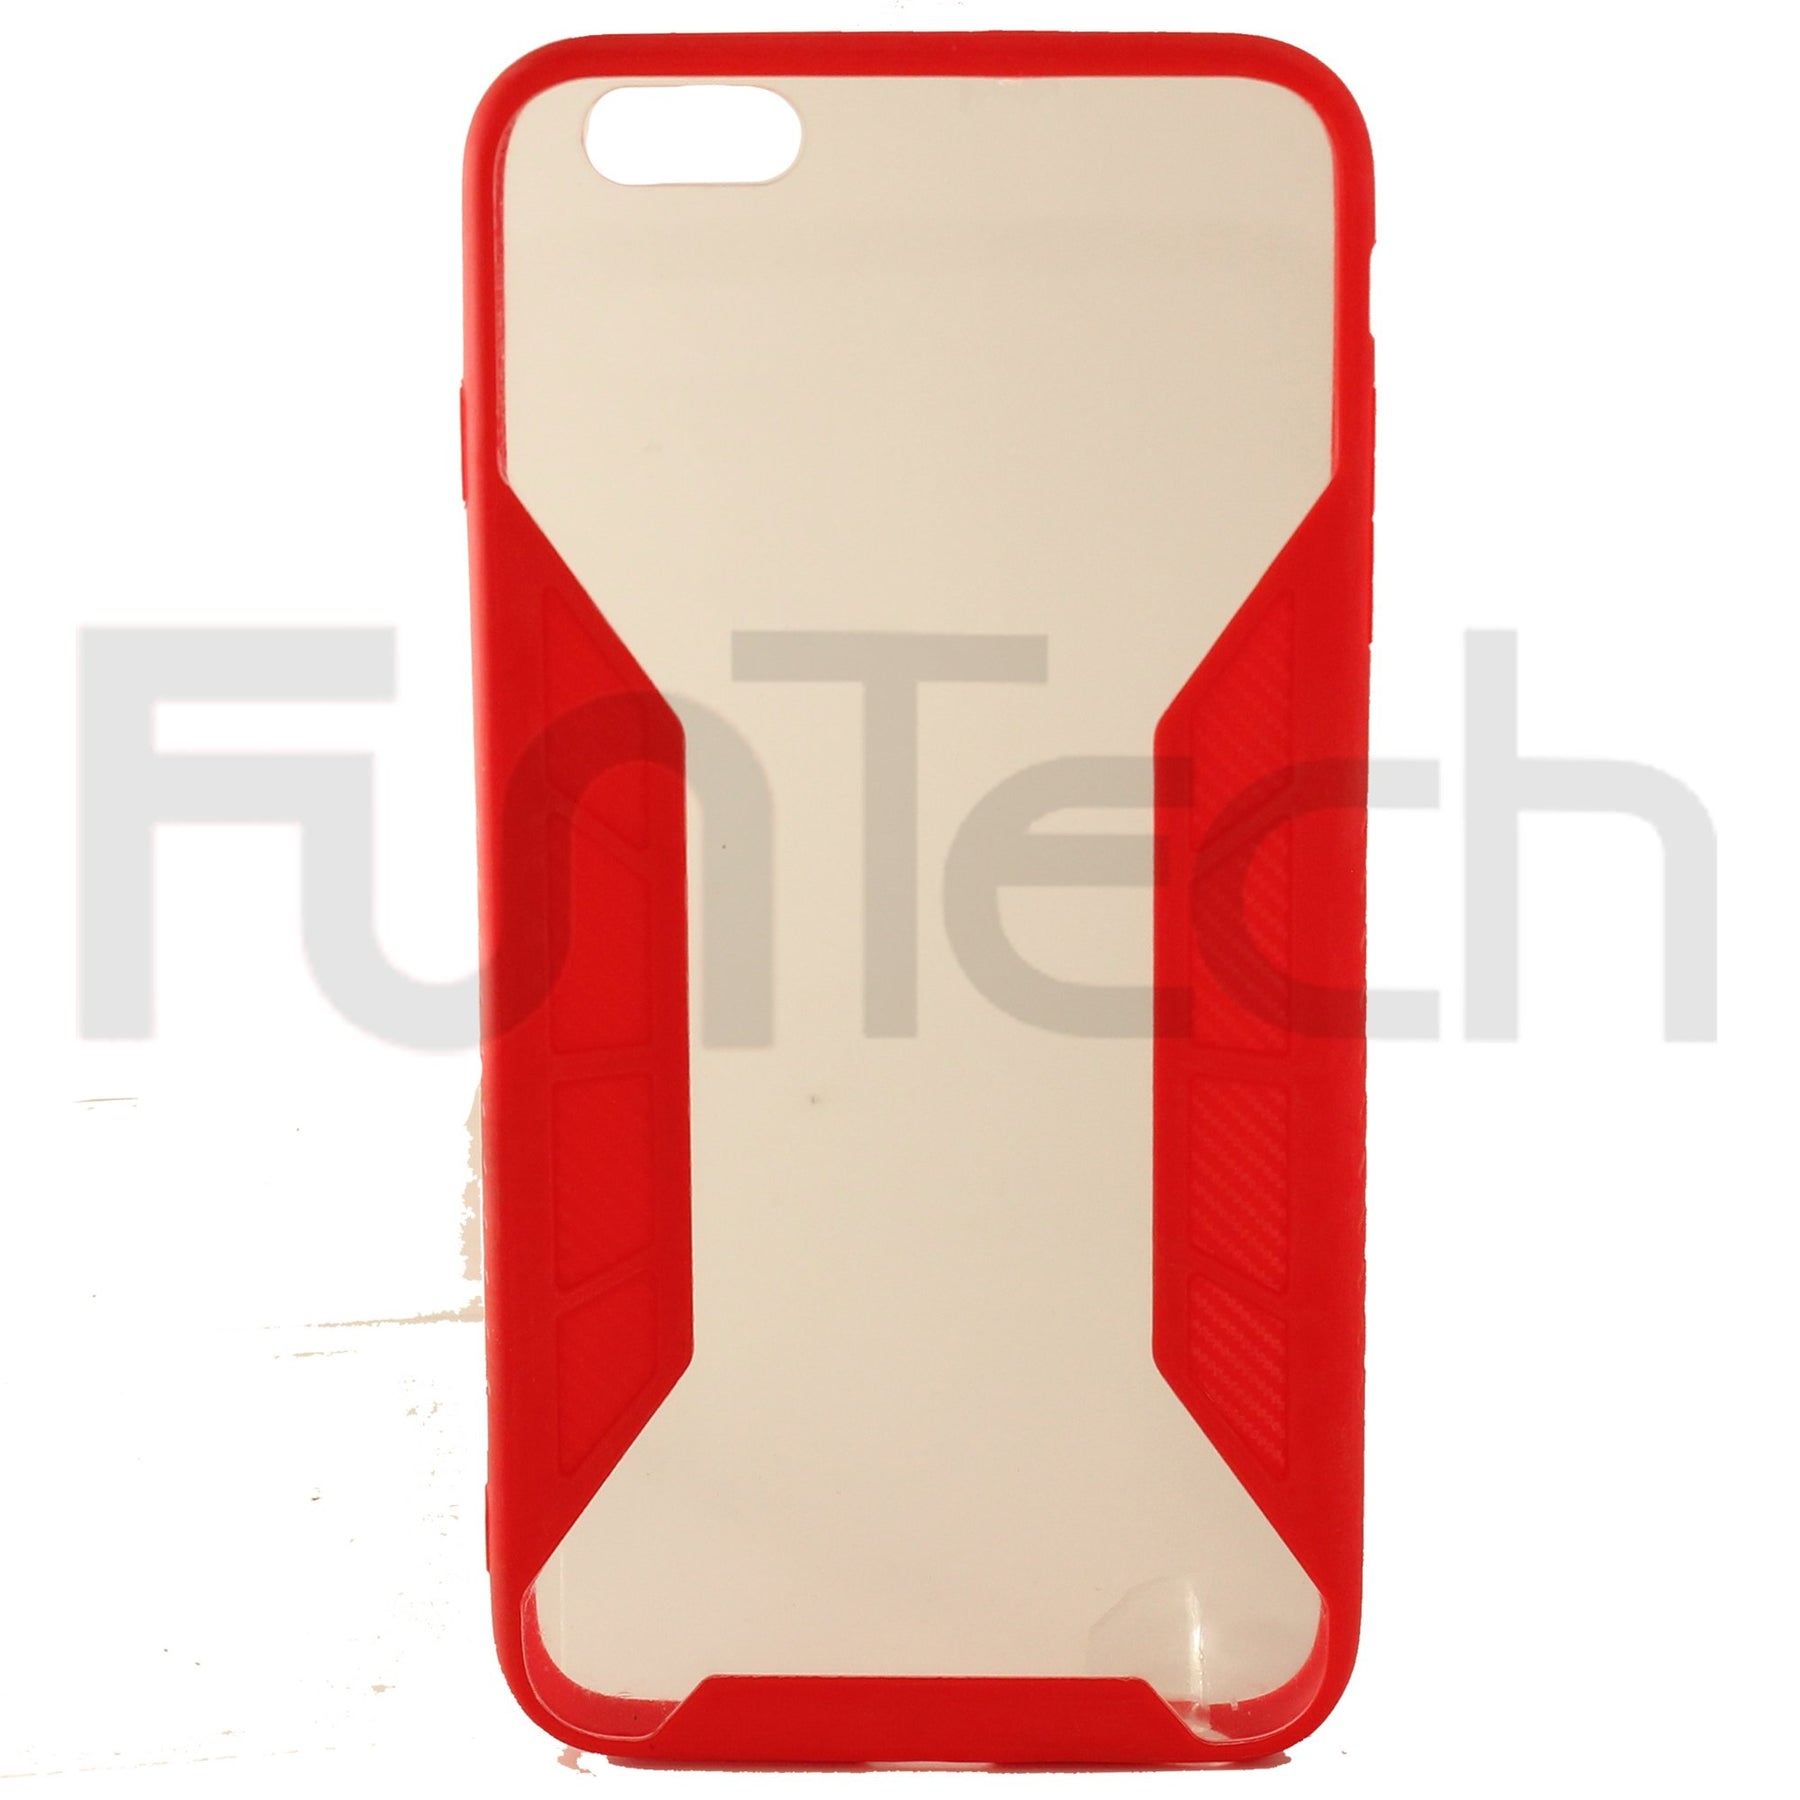 Apple iPhone 6 Plus Grid Gel Case Pink / Red